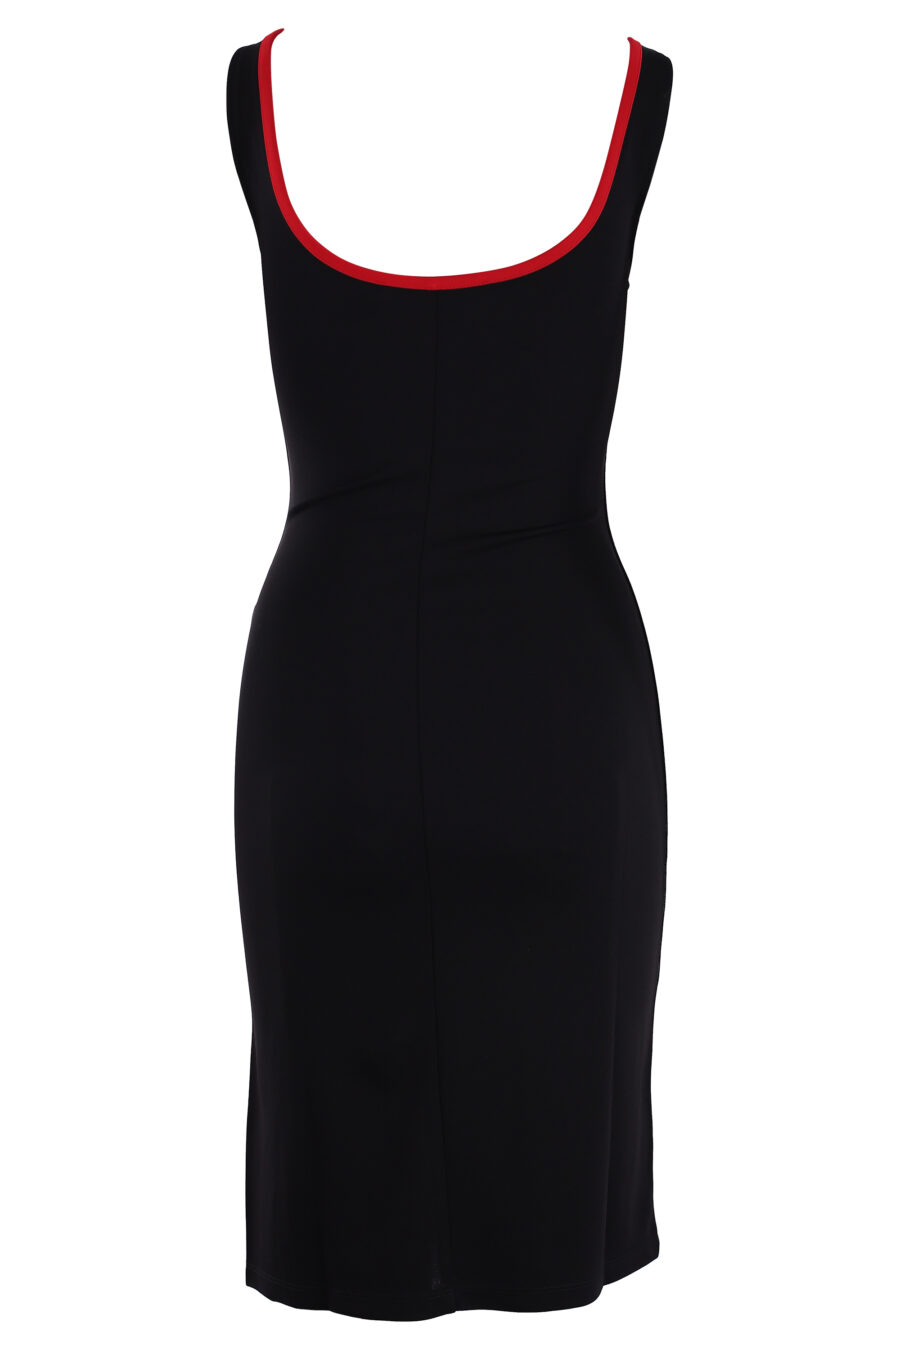 Vestido negro con logo en cinta lateral y detalles rojos - IMG 3044